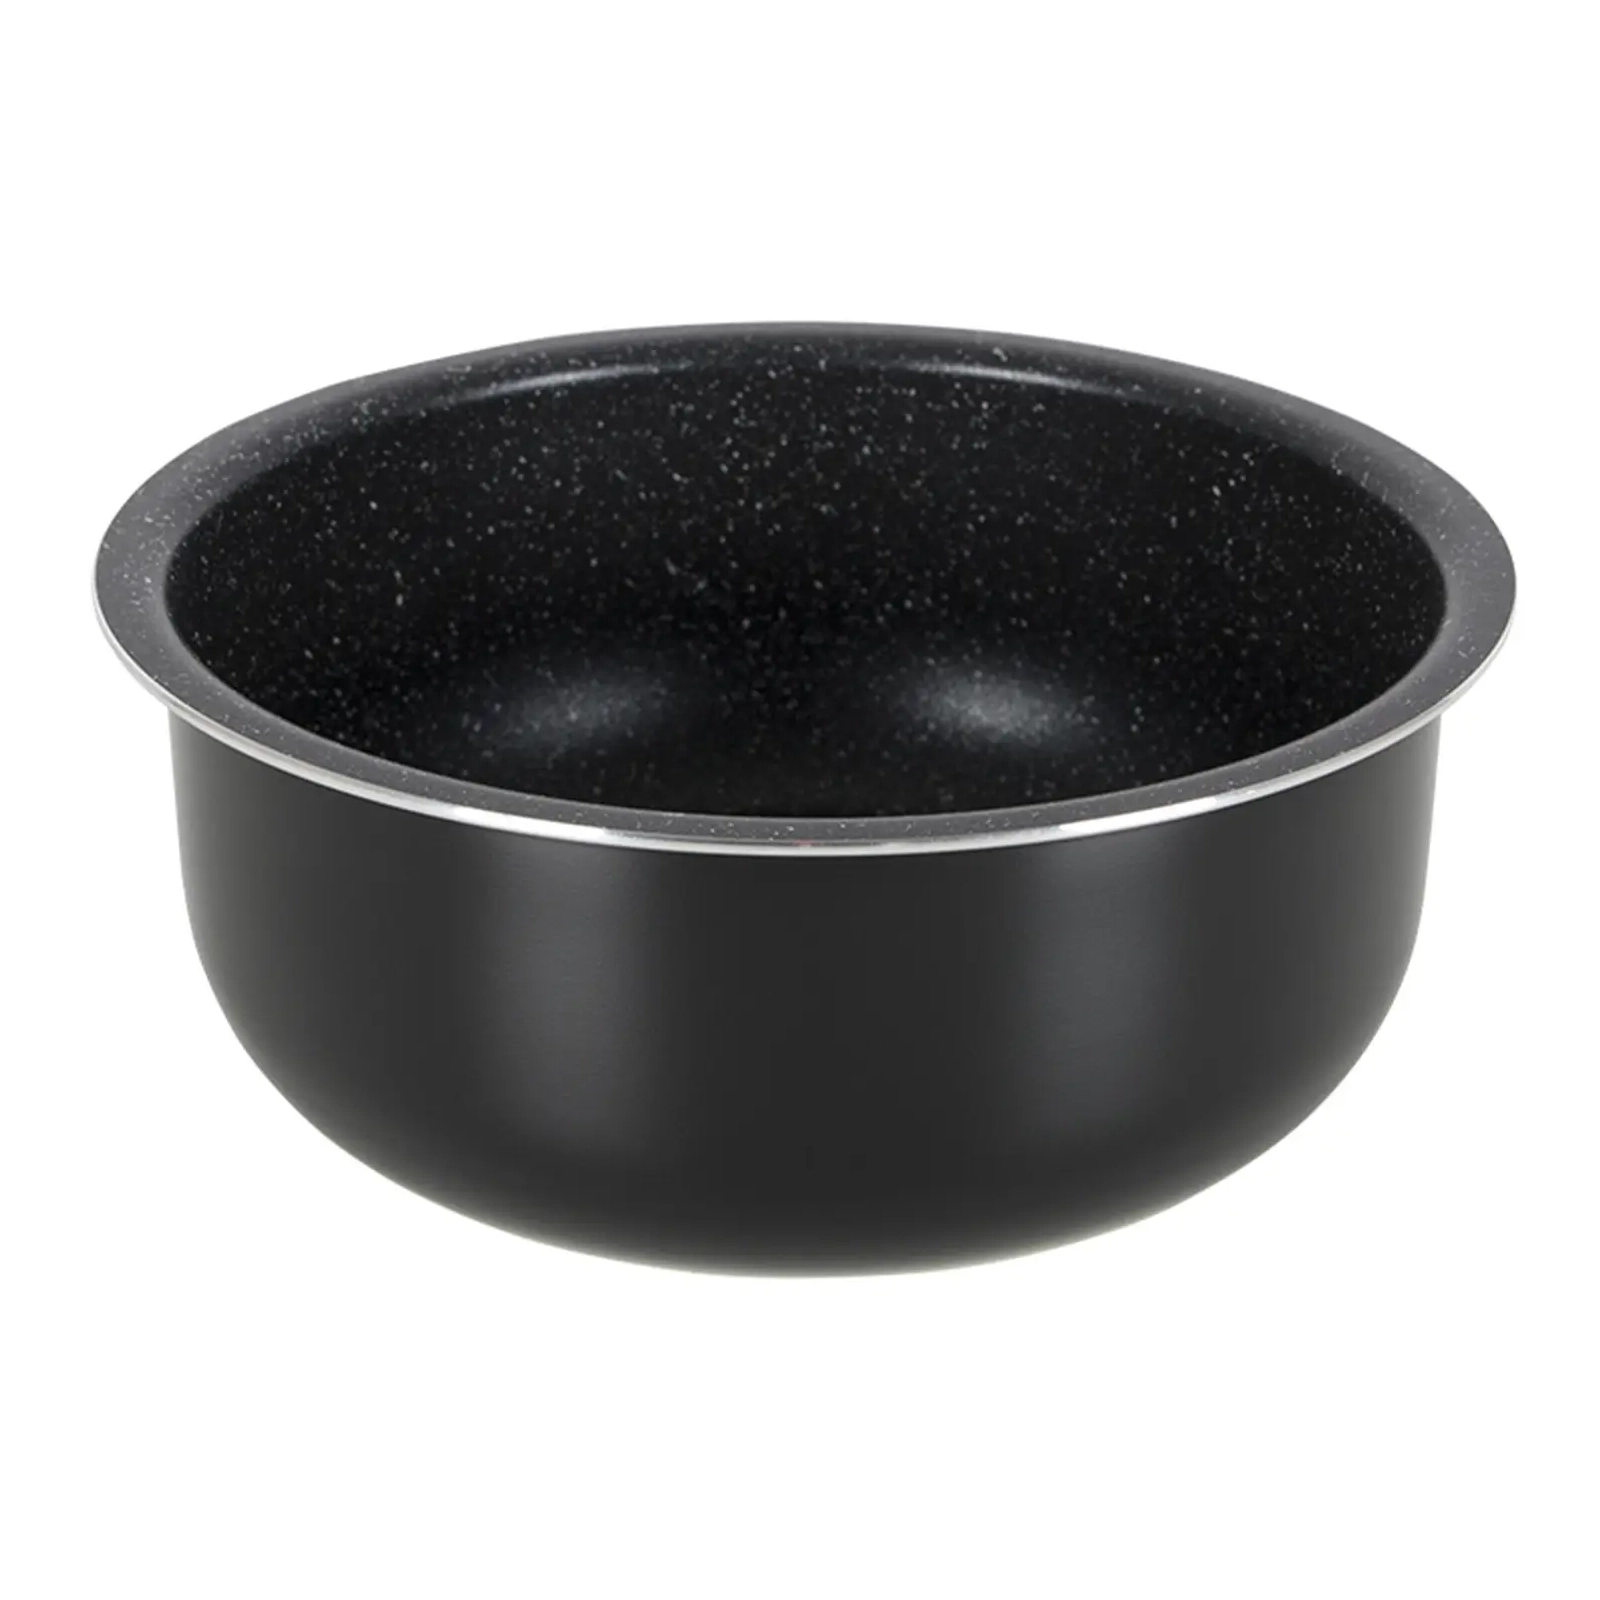 Набор посуды Gimex Cookware Set induction 7 предметів Black (6977222) изображение 4